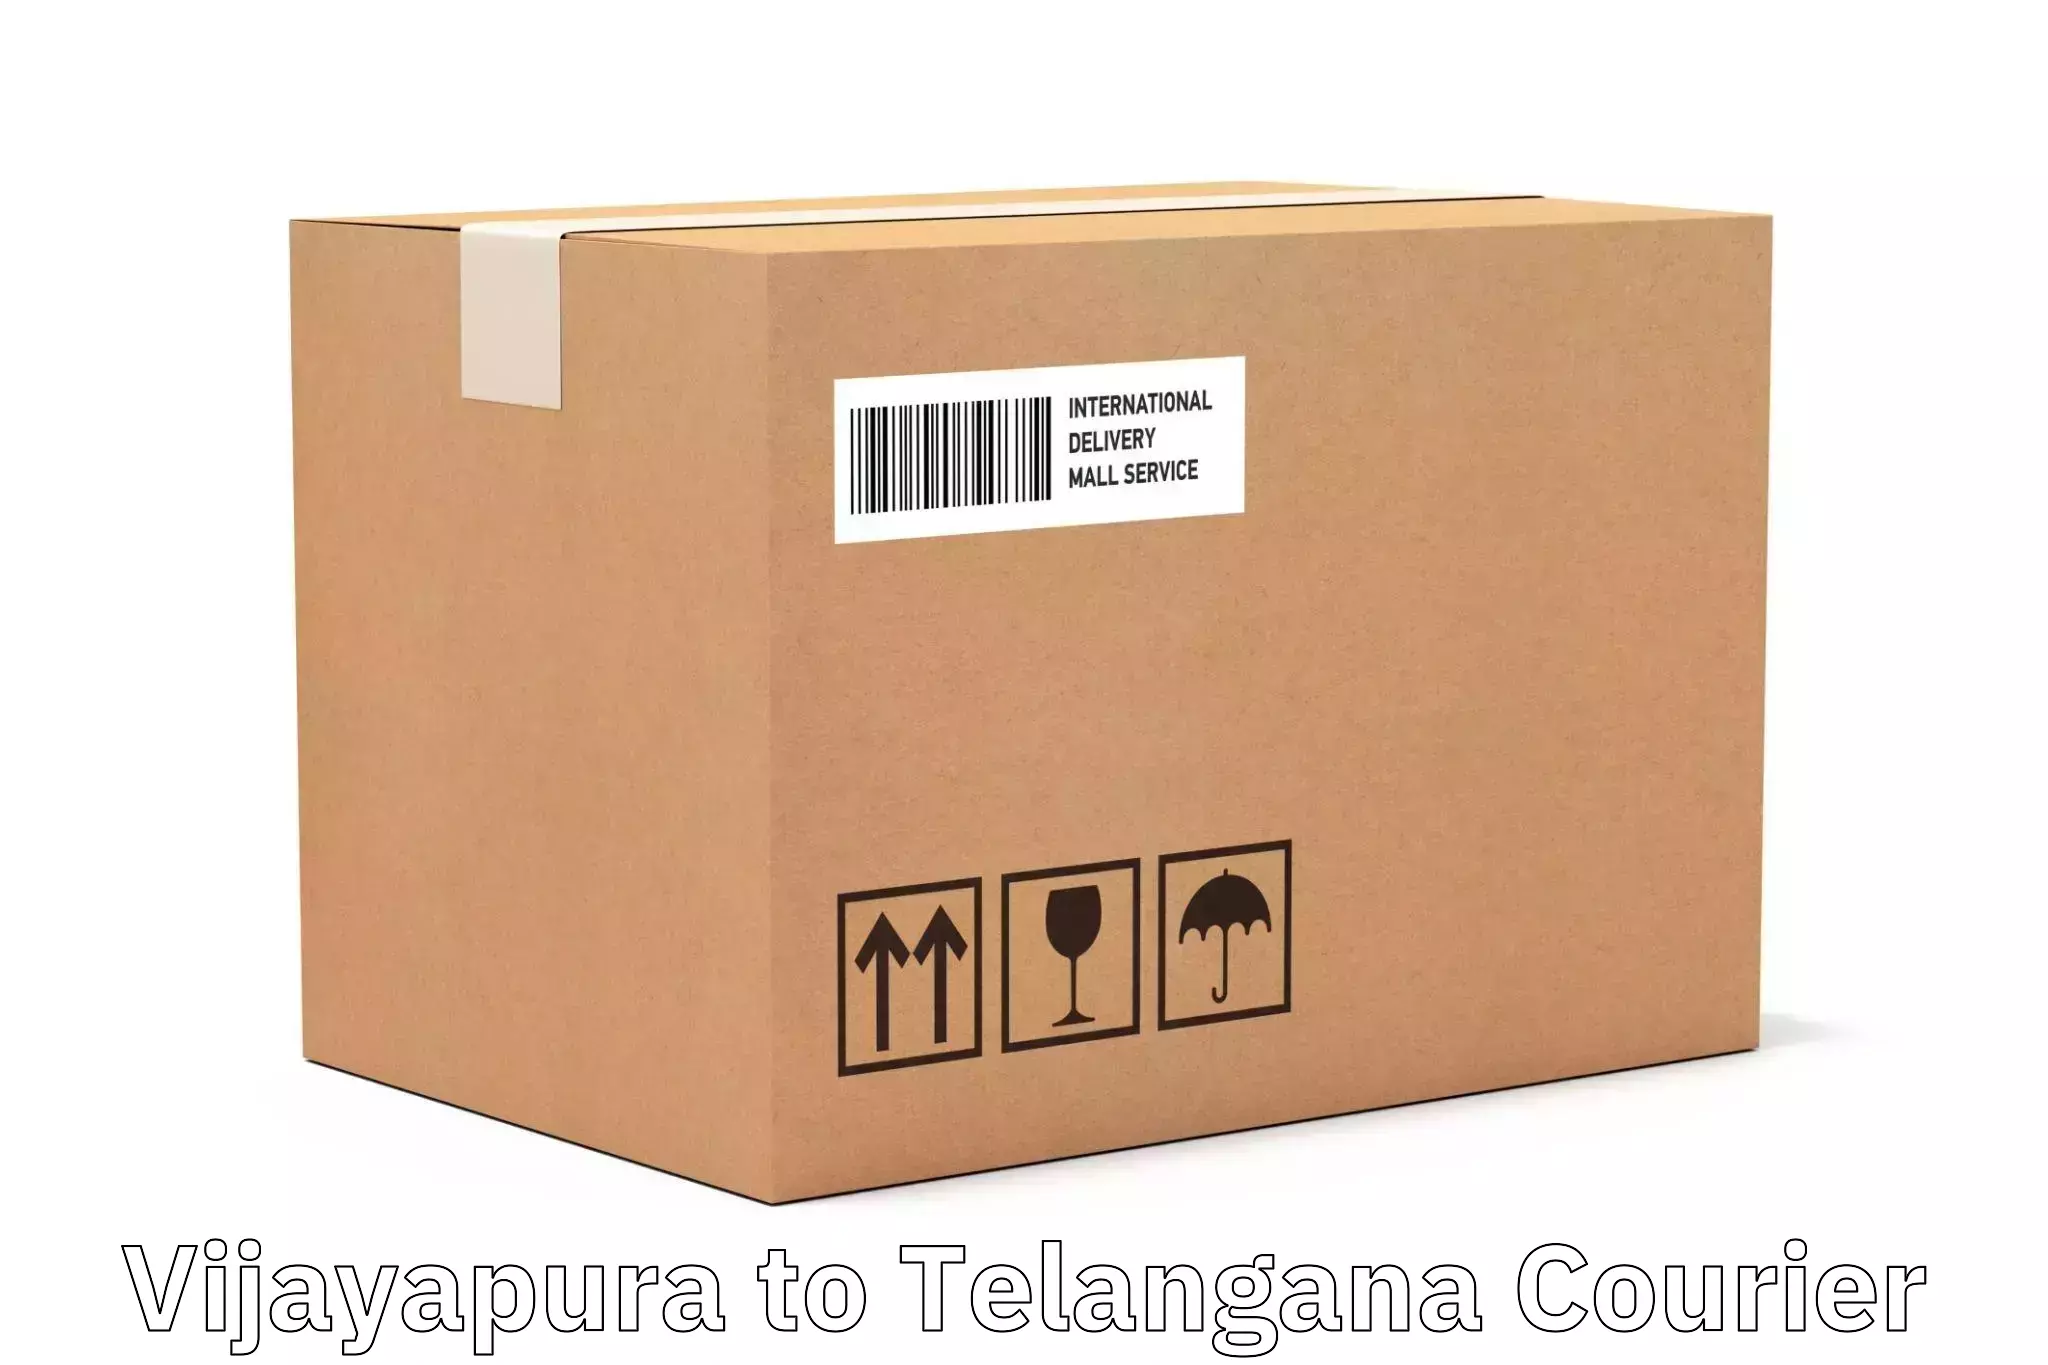 24-hour courier services Vijayapura to Telangana